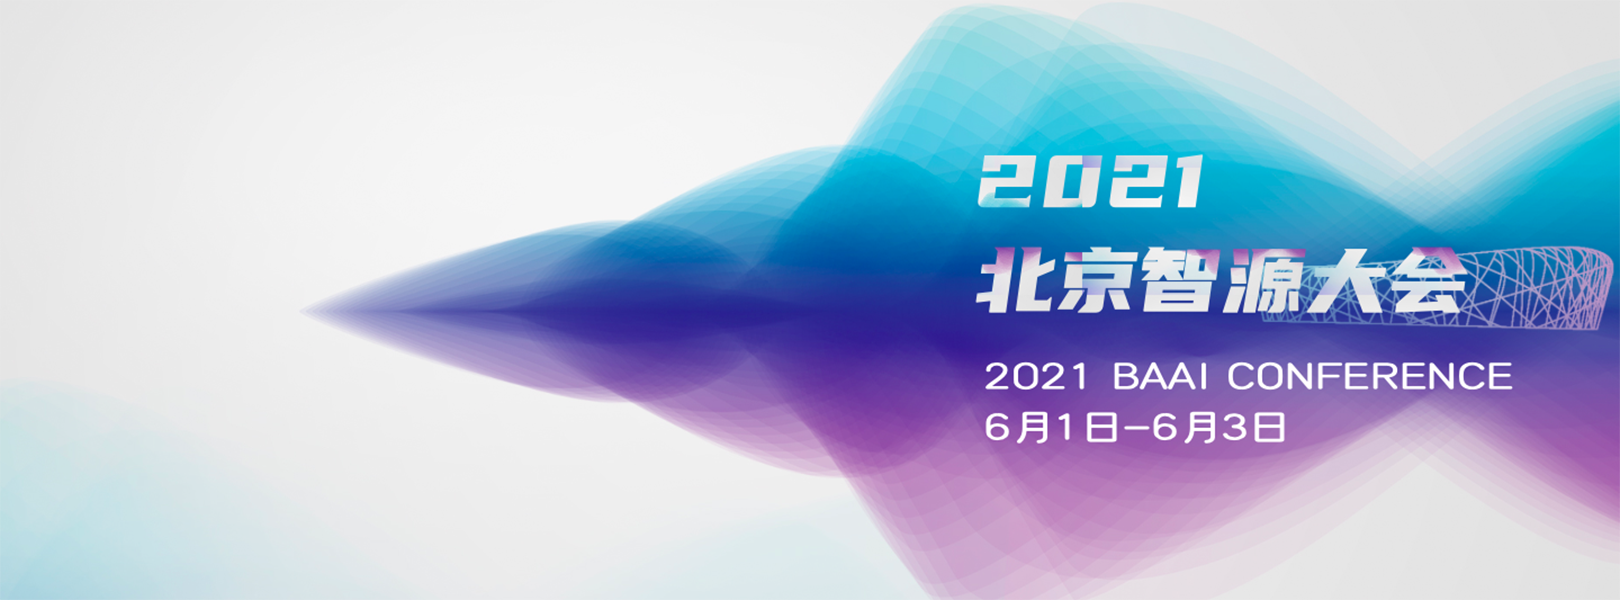 2021北京智源大会